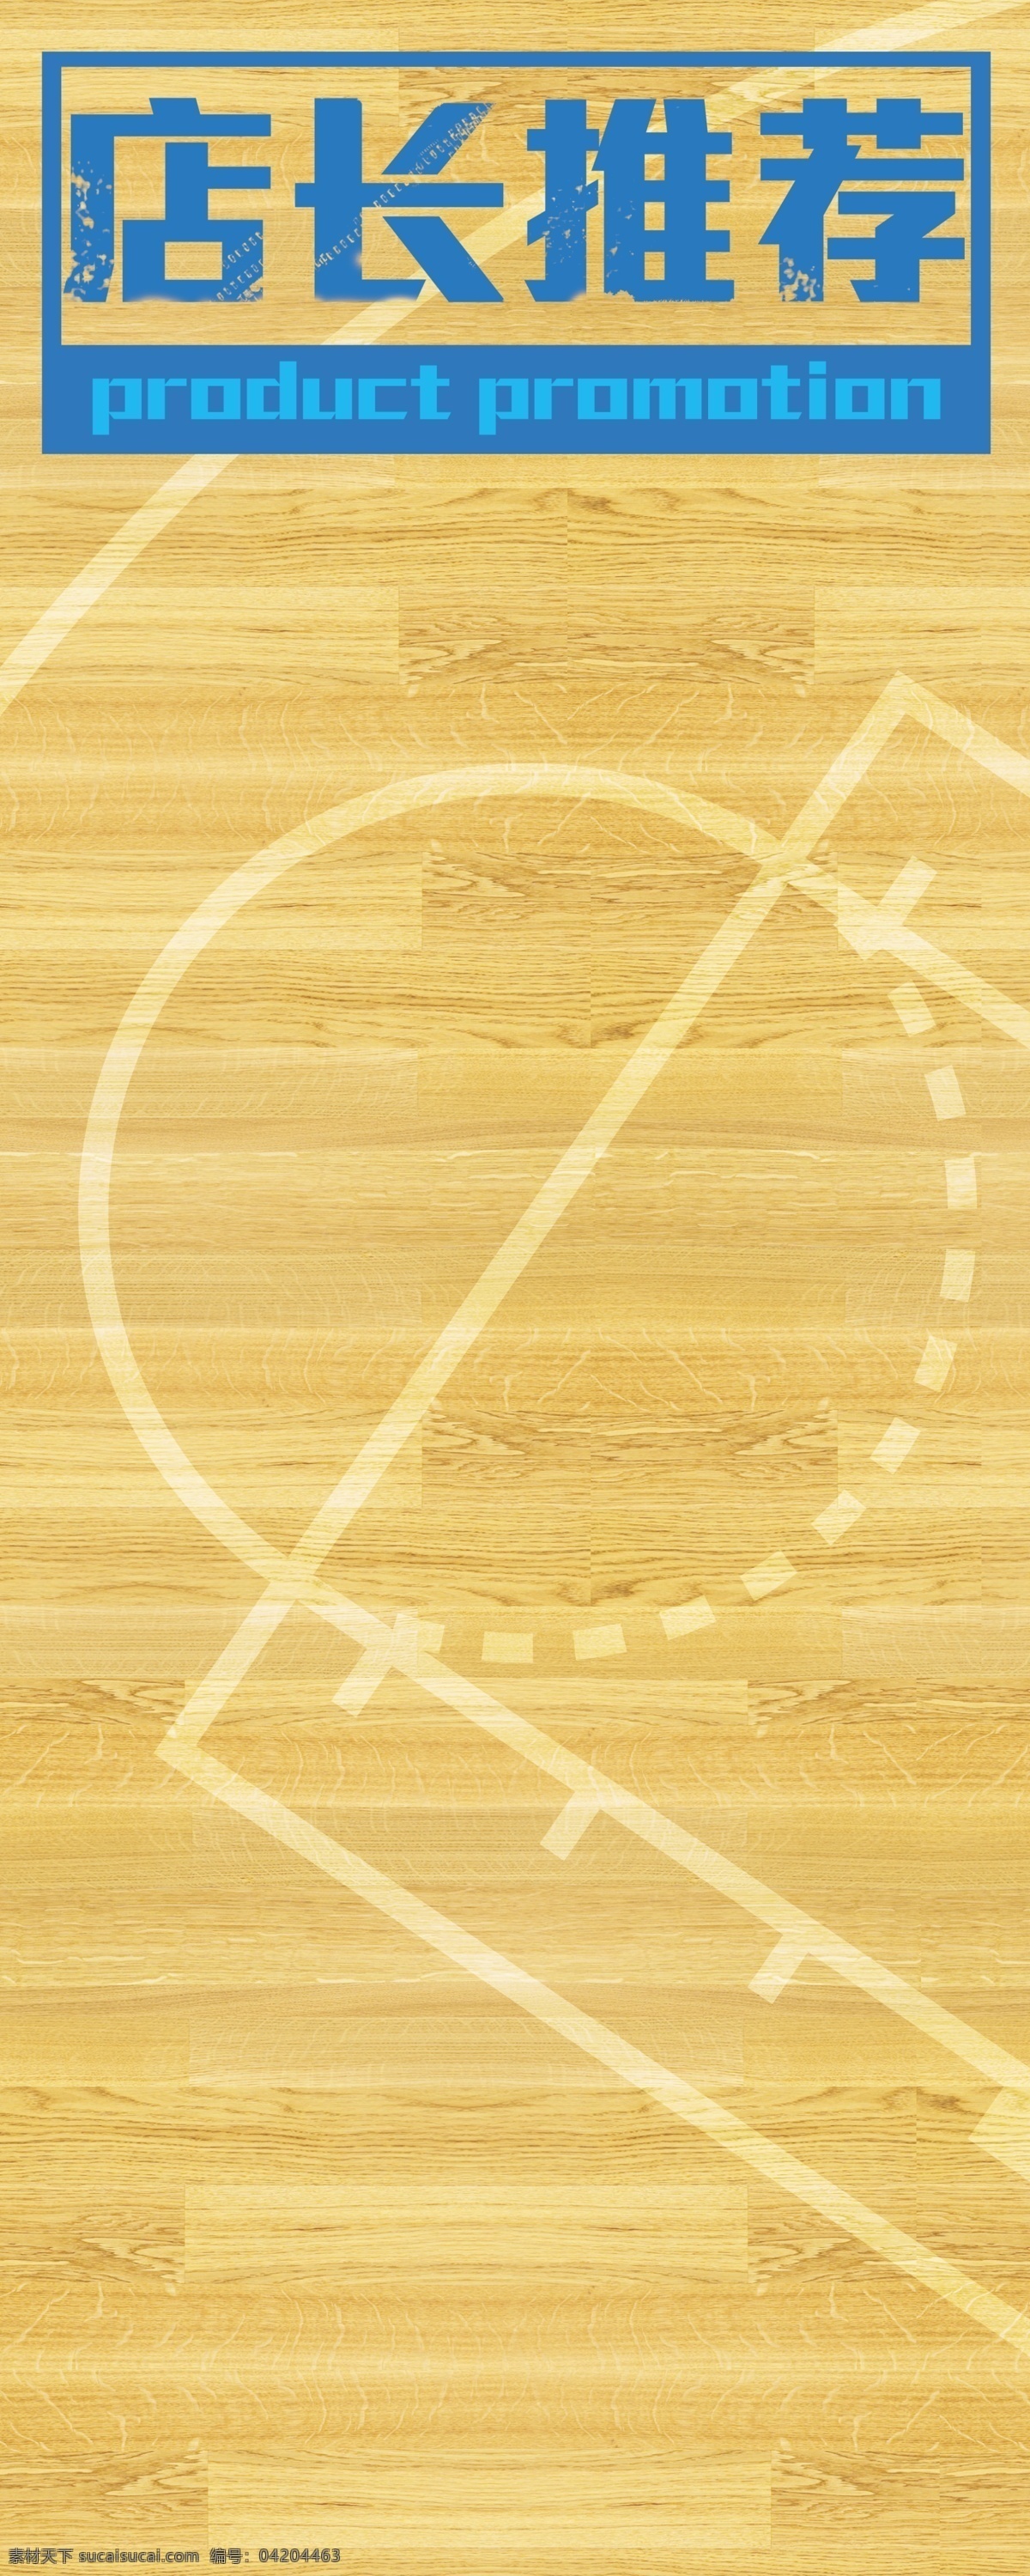 店长推荐 海报 促销 篮球 篮球场 木地板 店长 推荐 底纹边框 背景底纹 黄色